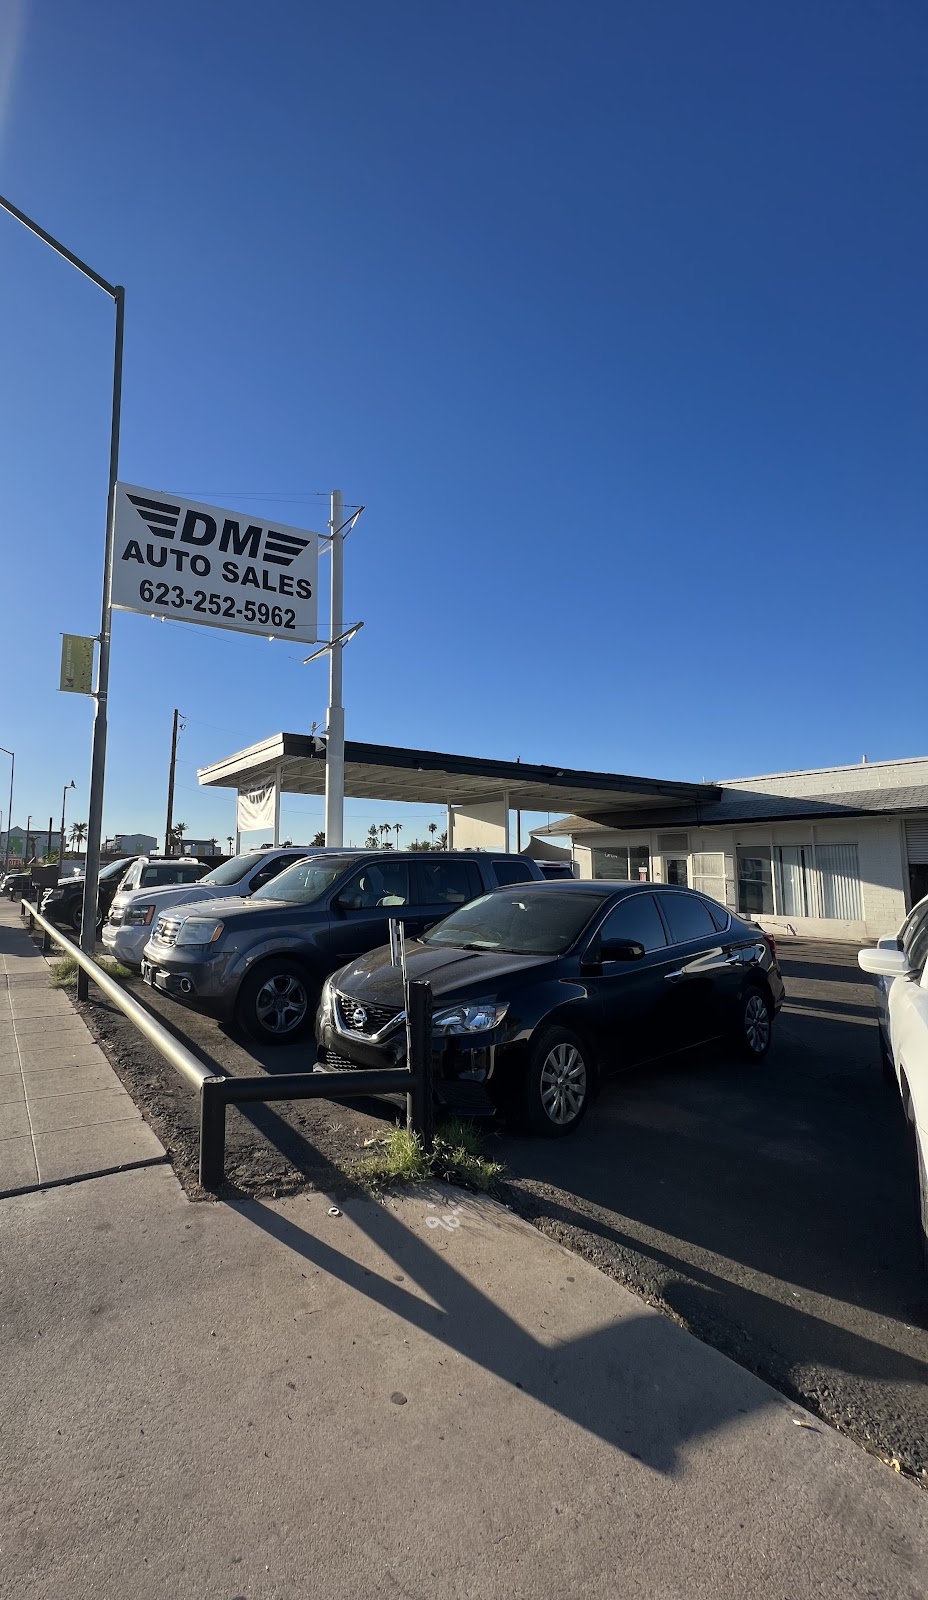 Ditat Deus Automotive - Deus Motors | 2126 W Main St, Mesa, AZ 85201, USA | Phone: (623) 252-5962